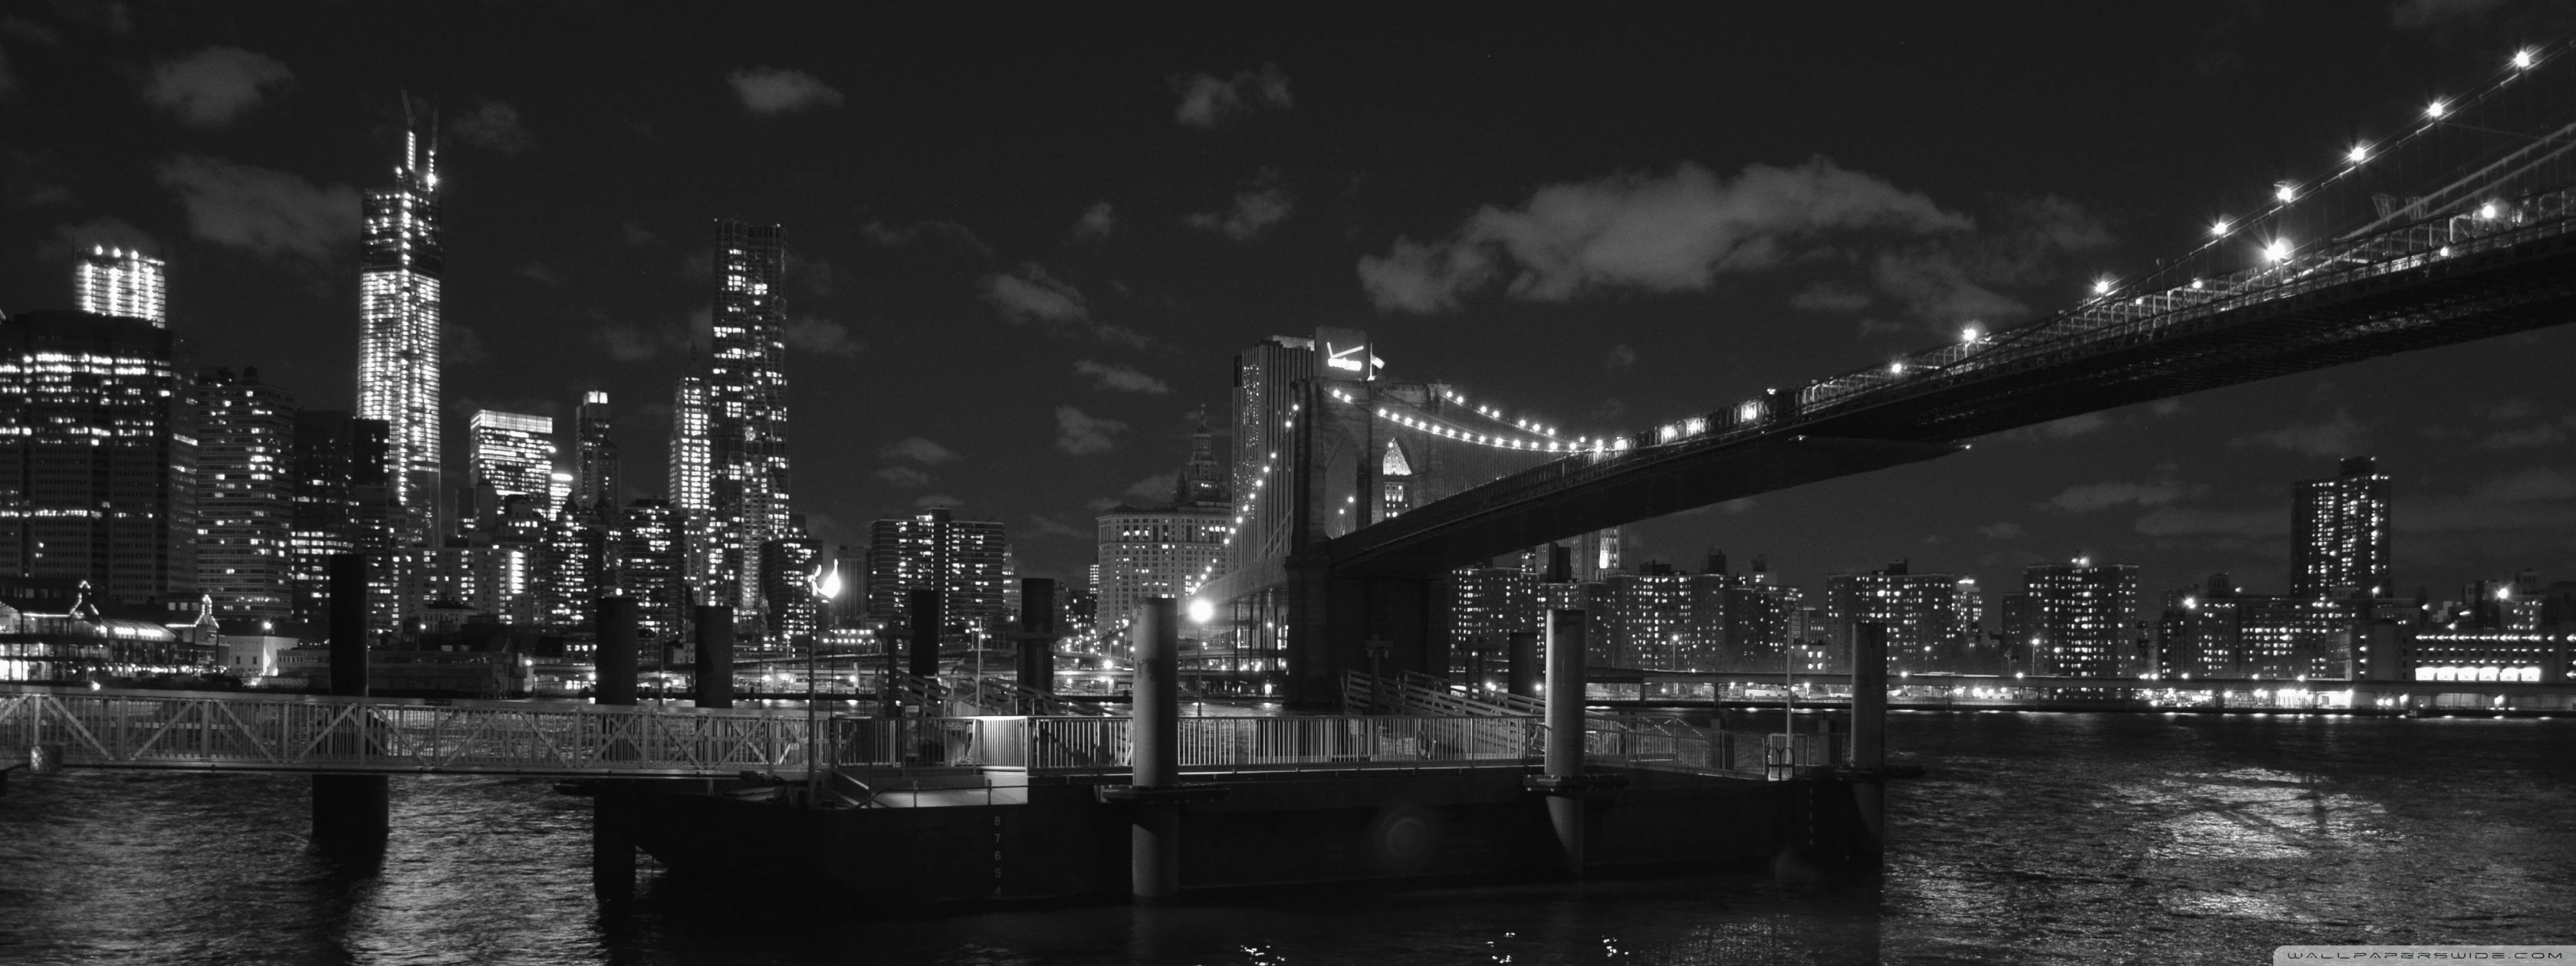 뉴욕 바탕 화면 b & q,도시 풍경,수도권,밤,다리,검정